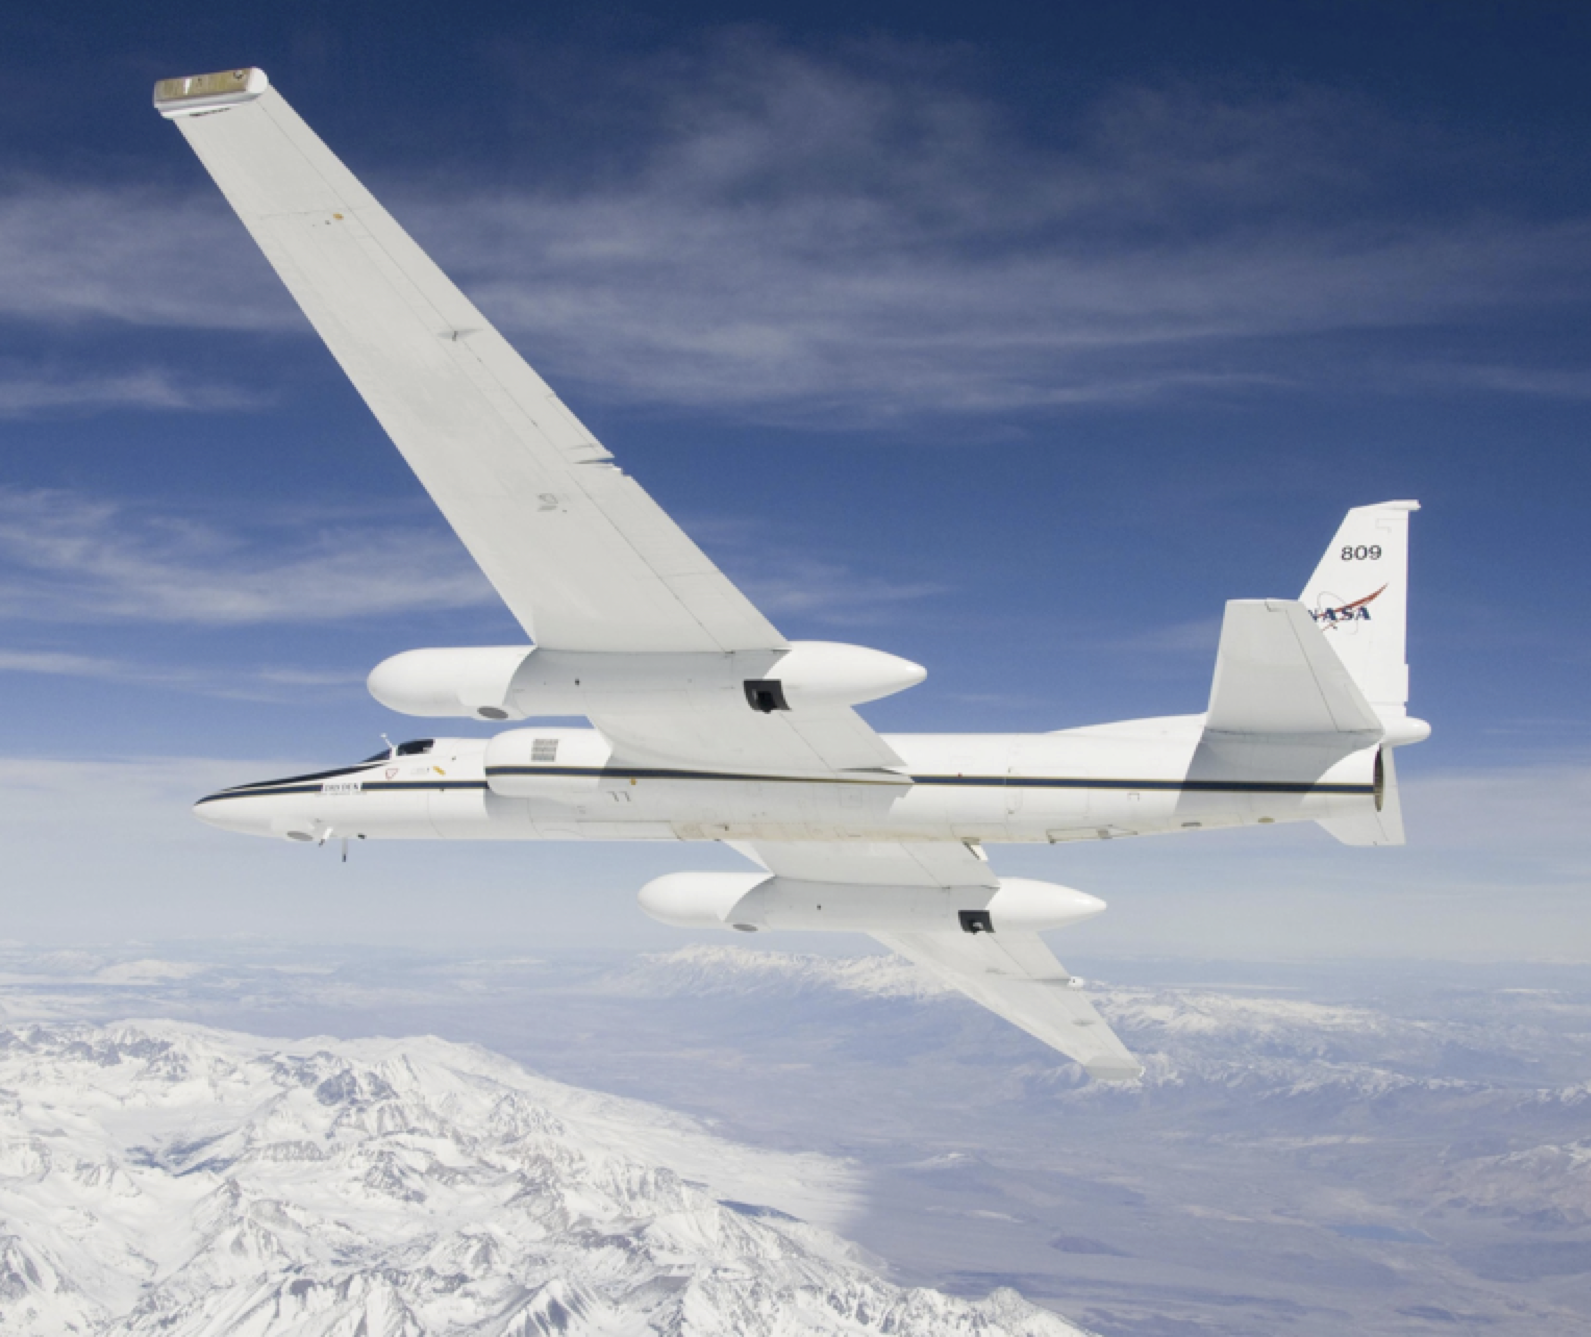 NASA ER-2 High-Altitude Research Aircraft